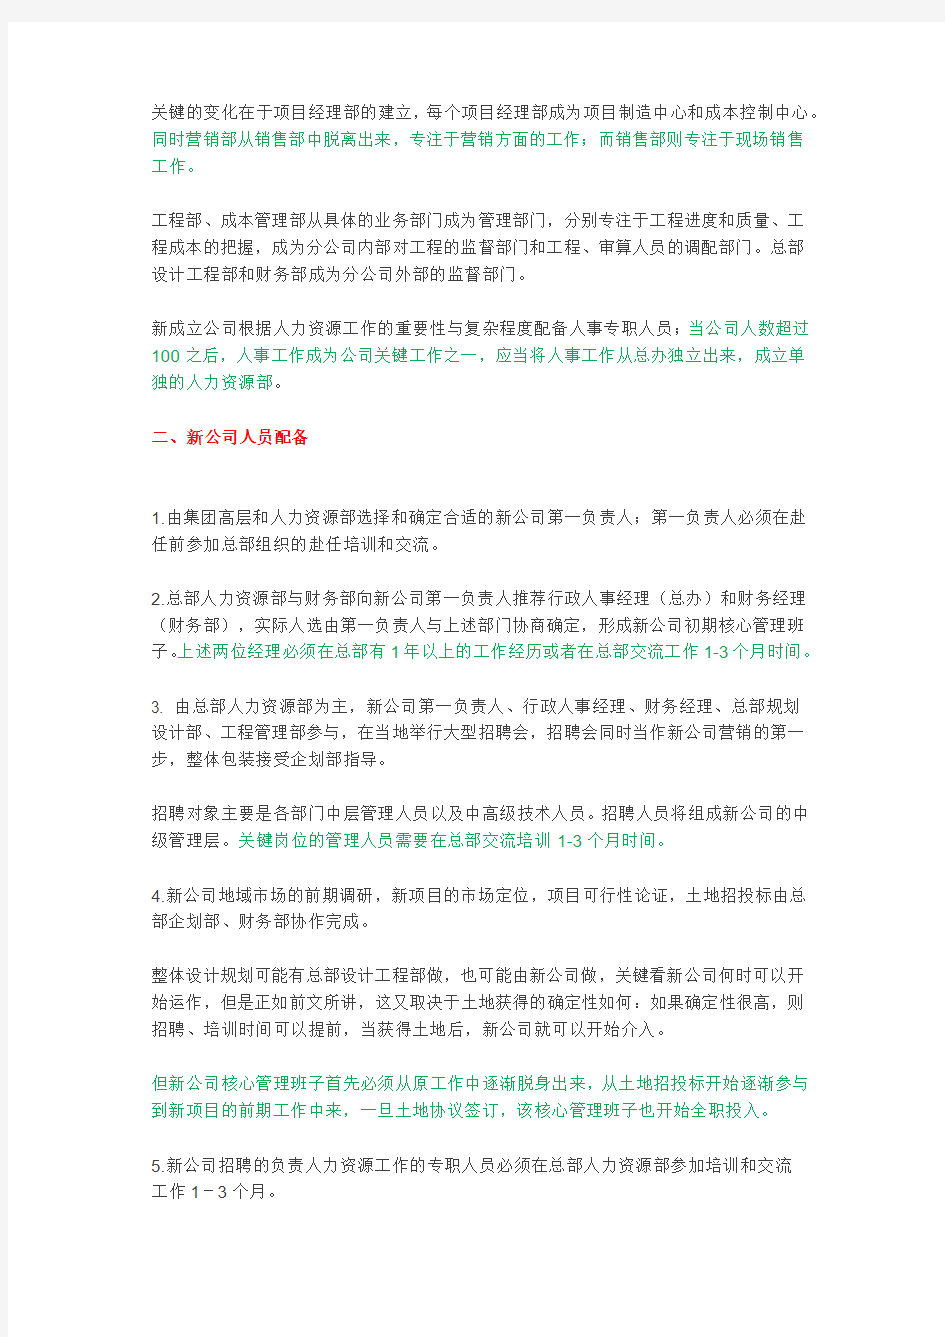 【实用文档】万科新公司人员配置标准(区域总必看).